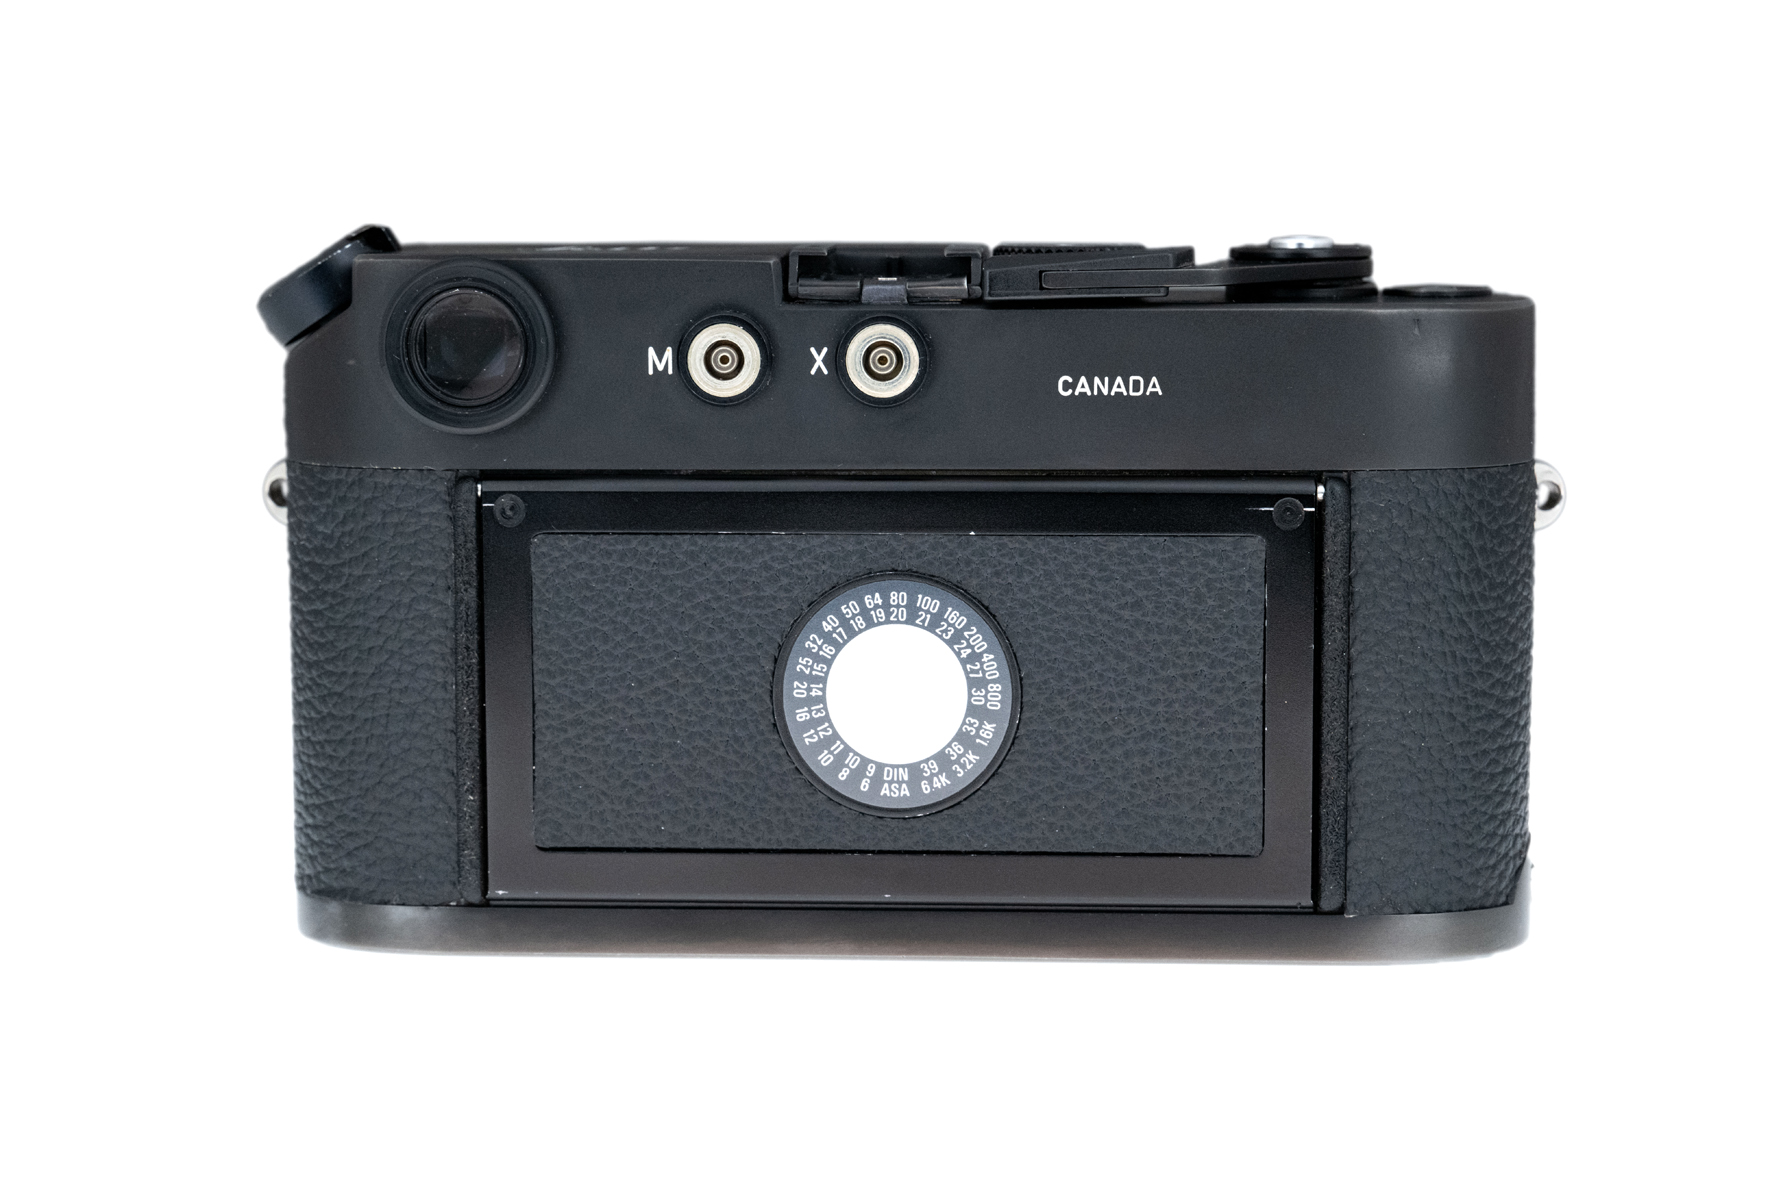 Leica M4-2 schwarz verchromt 